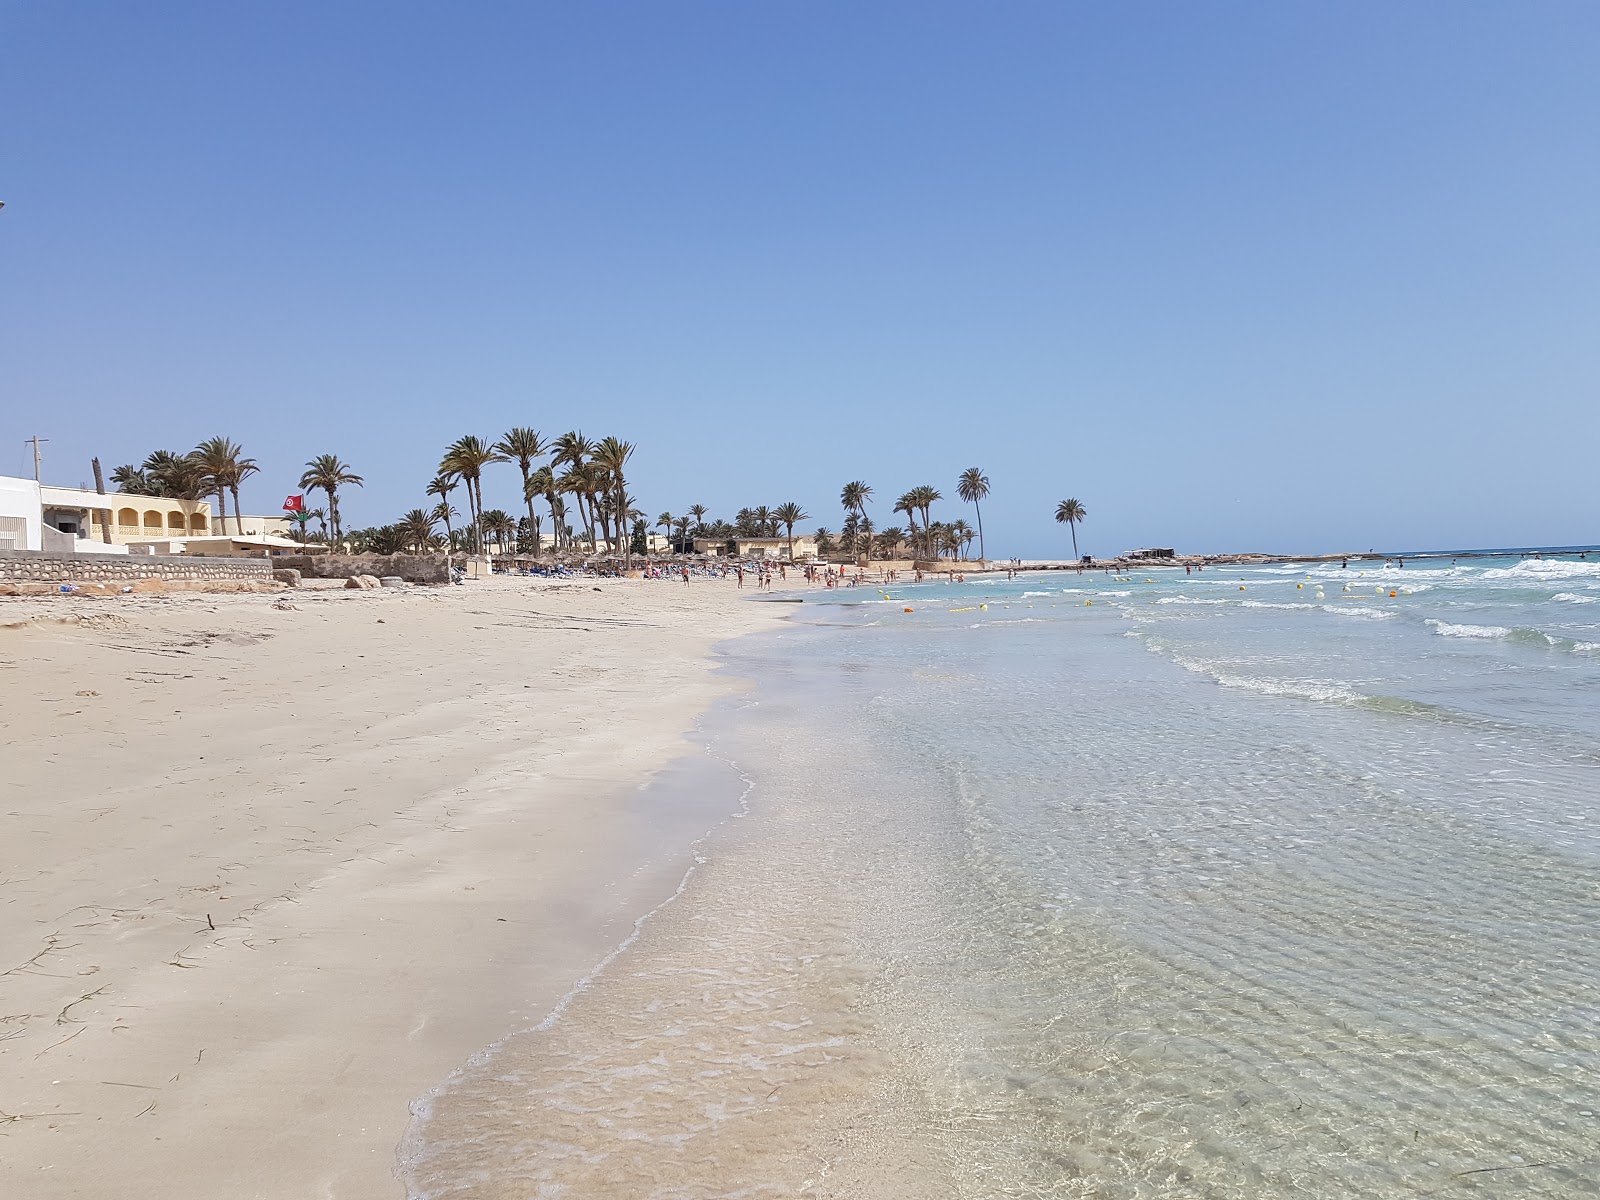 Al-Swehel beach'in fotoğrafı beyaz kum yüzey ile